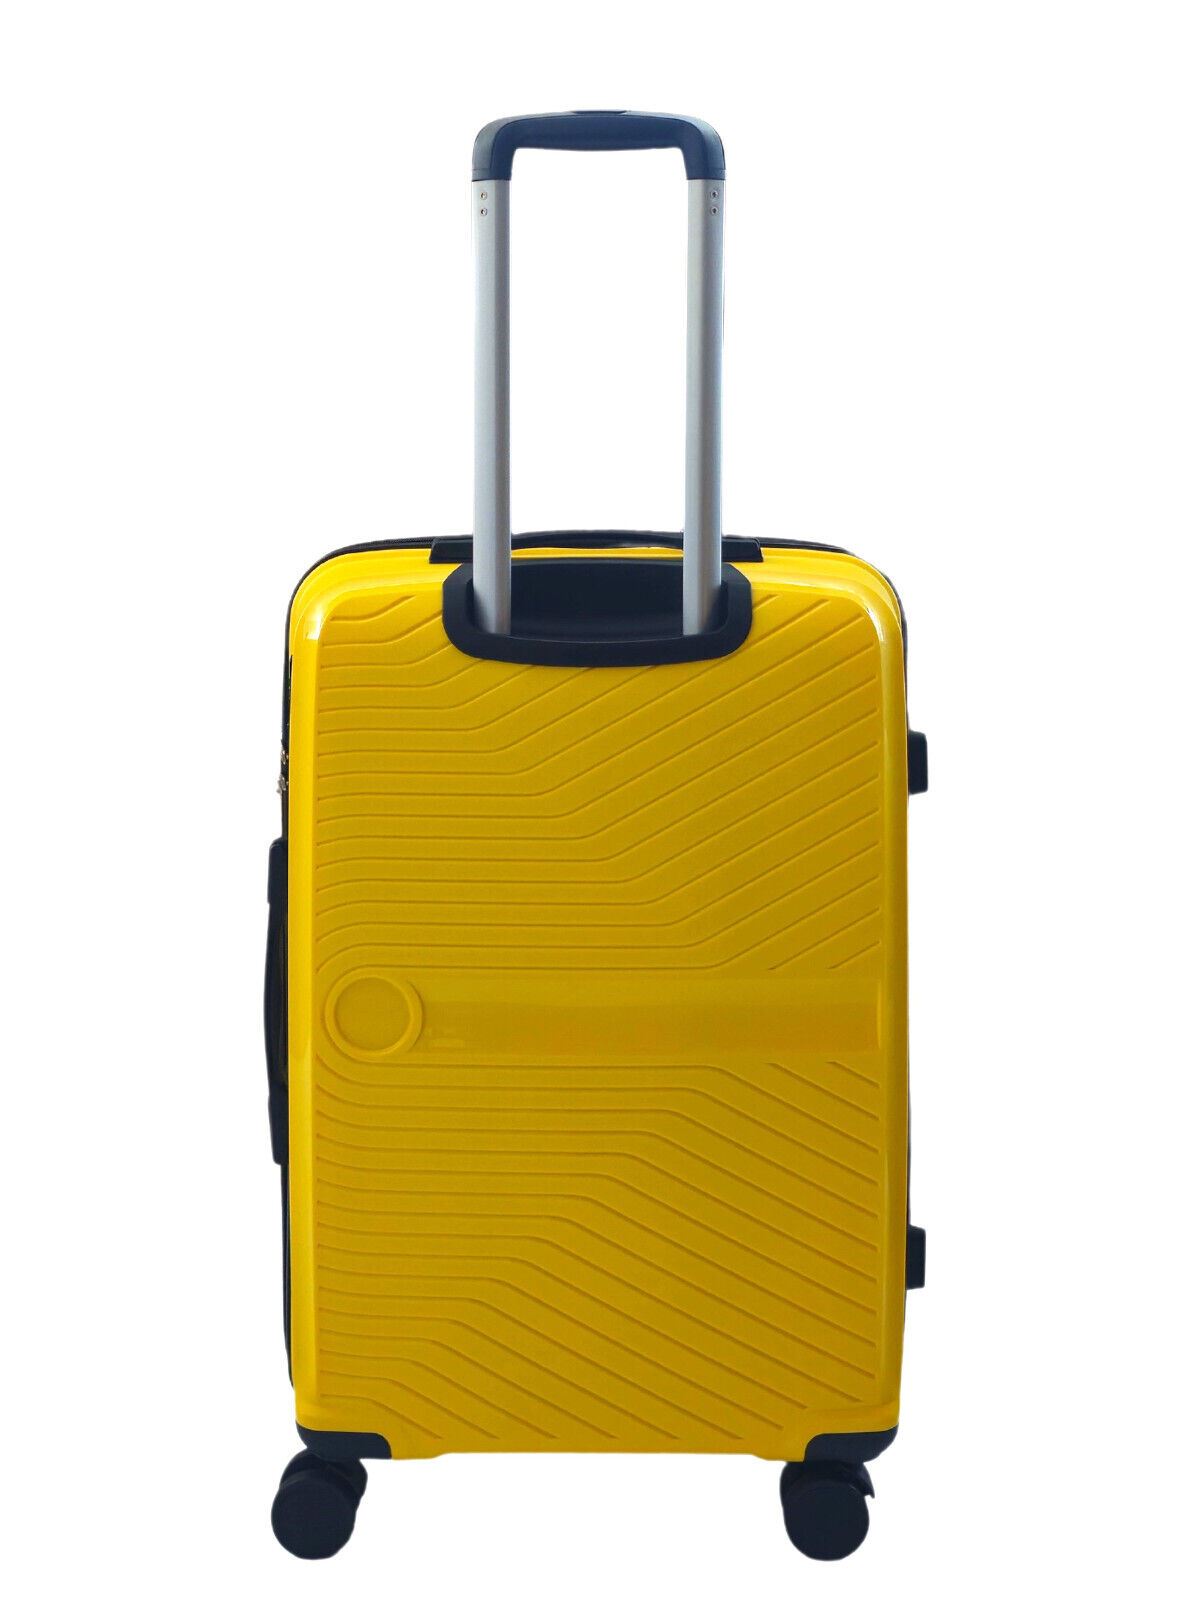 Hard Shell Suitcase Cabin Luggage Travel Set